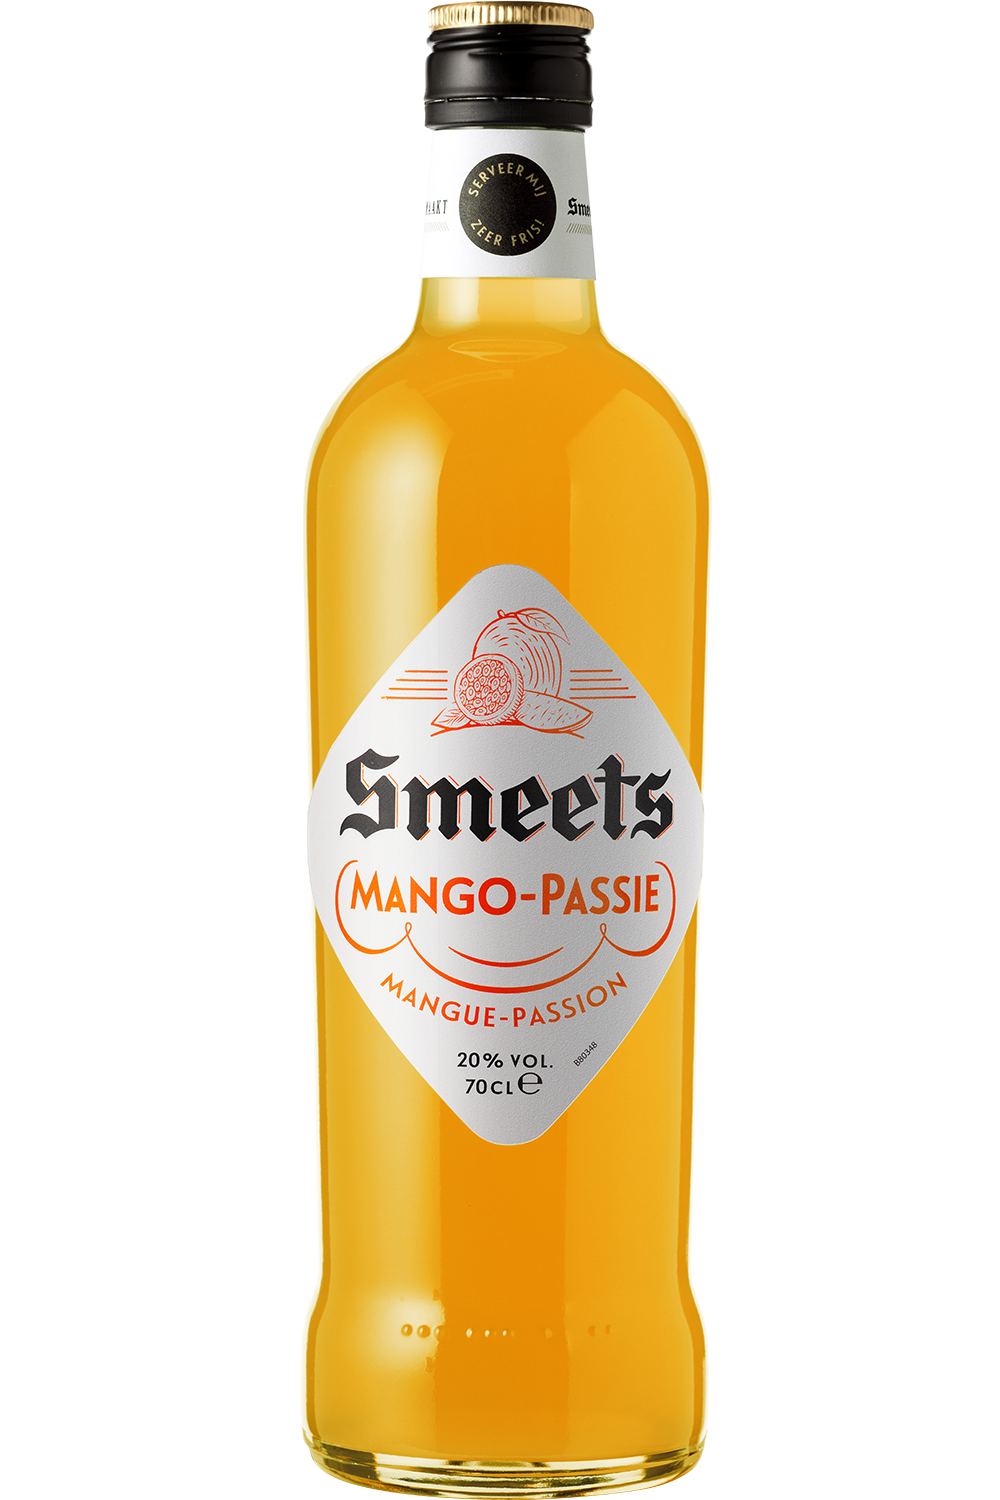 Smeets Mango-Passie 